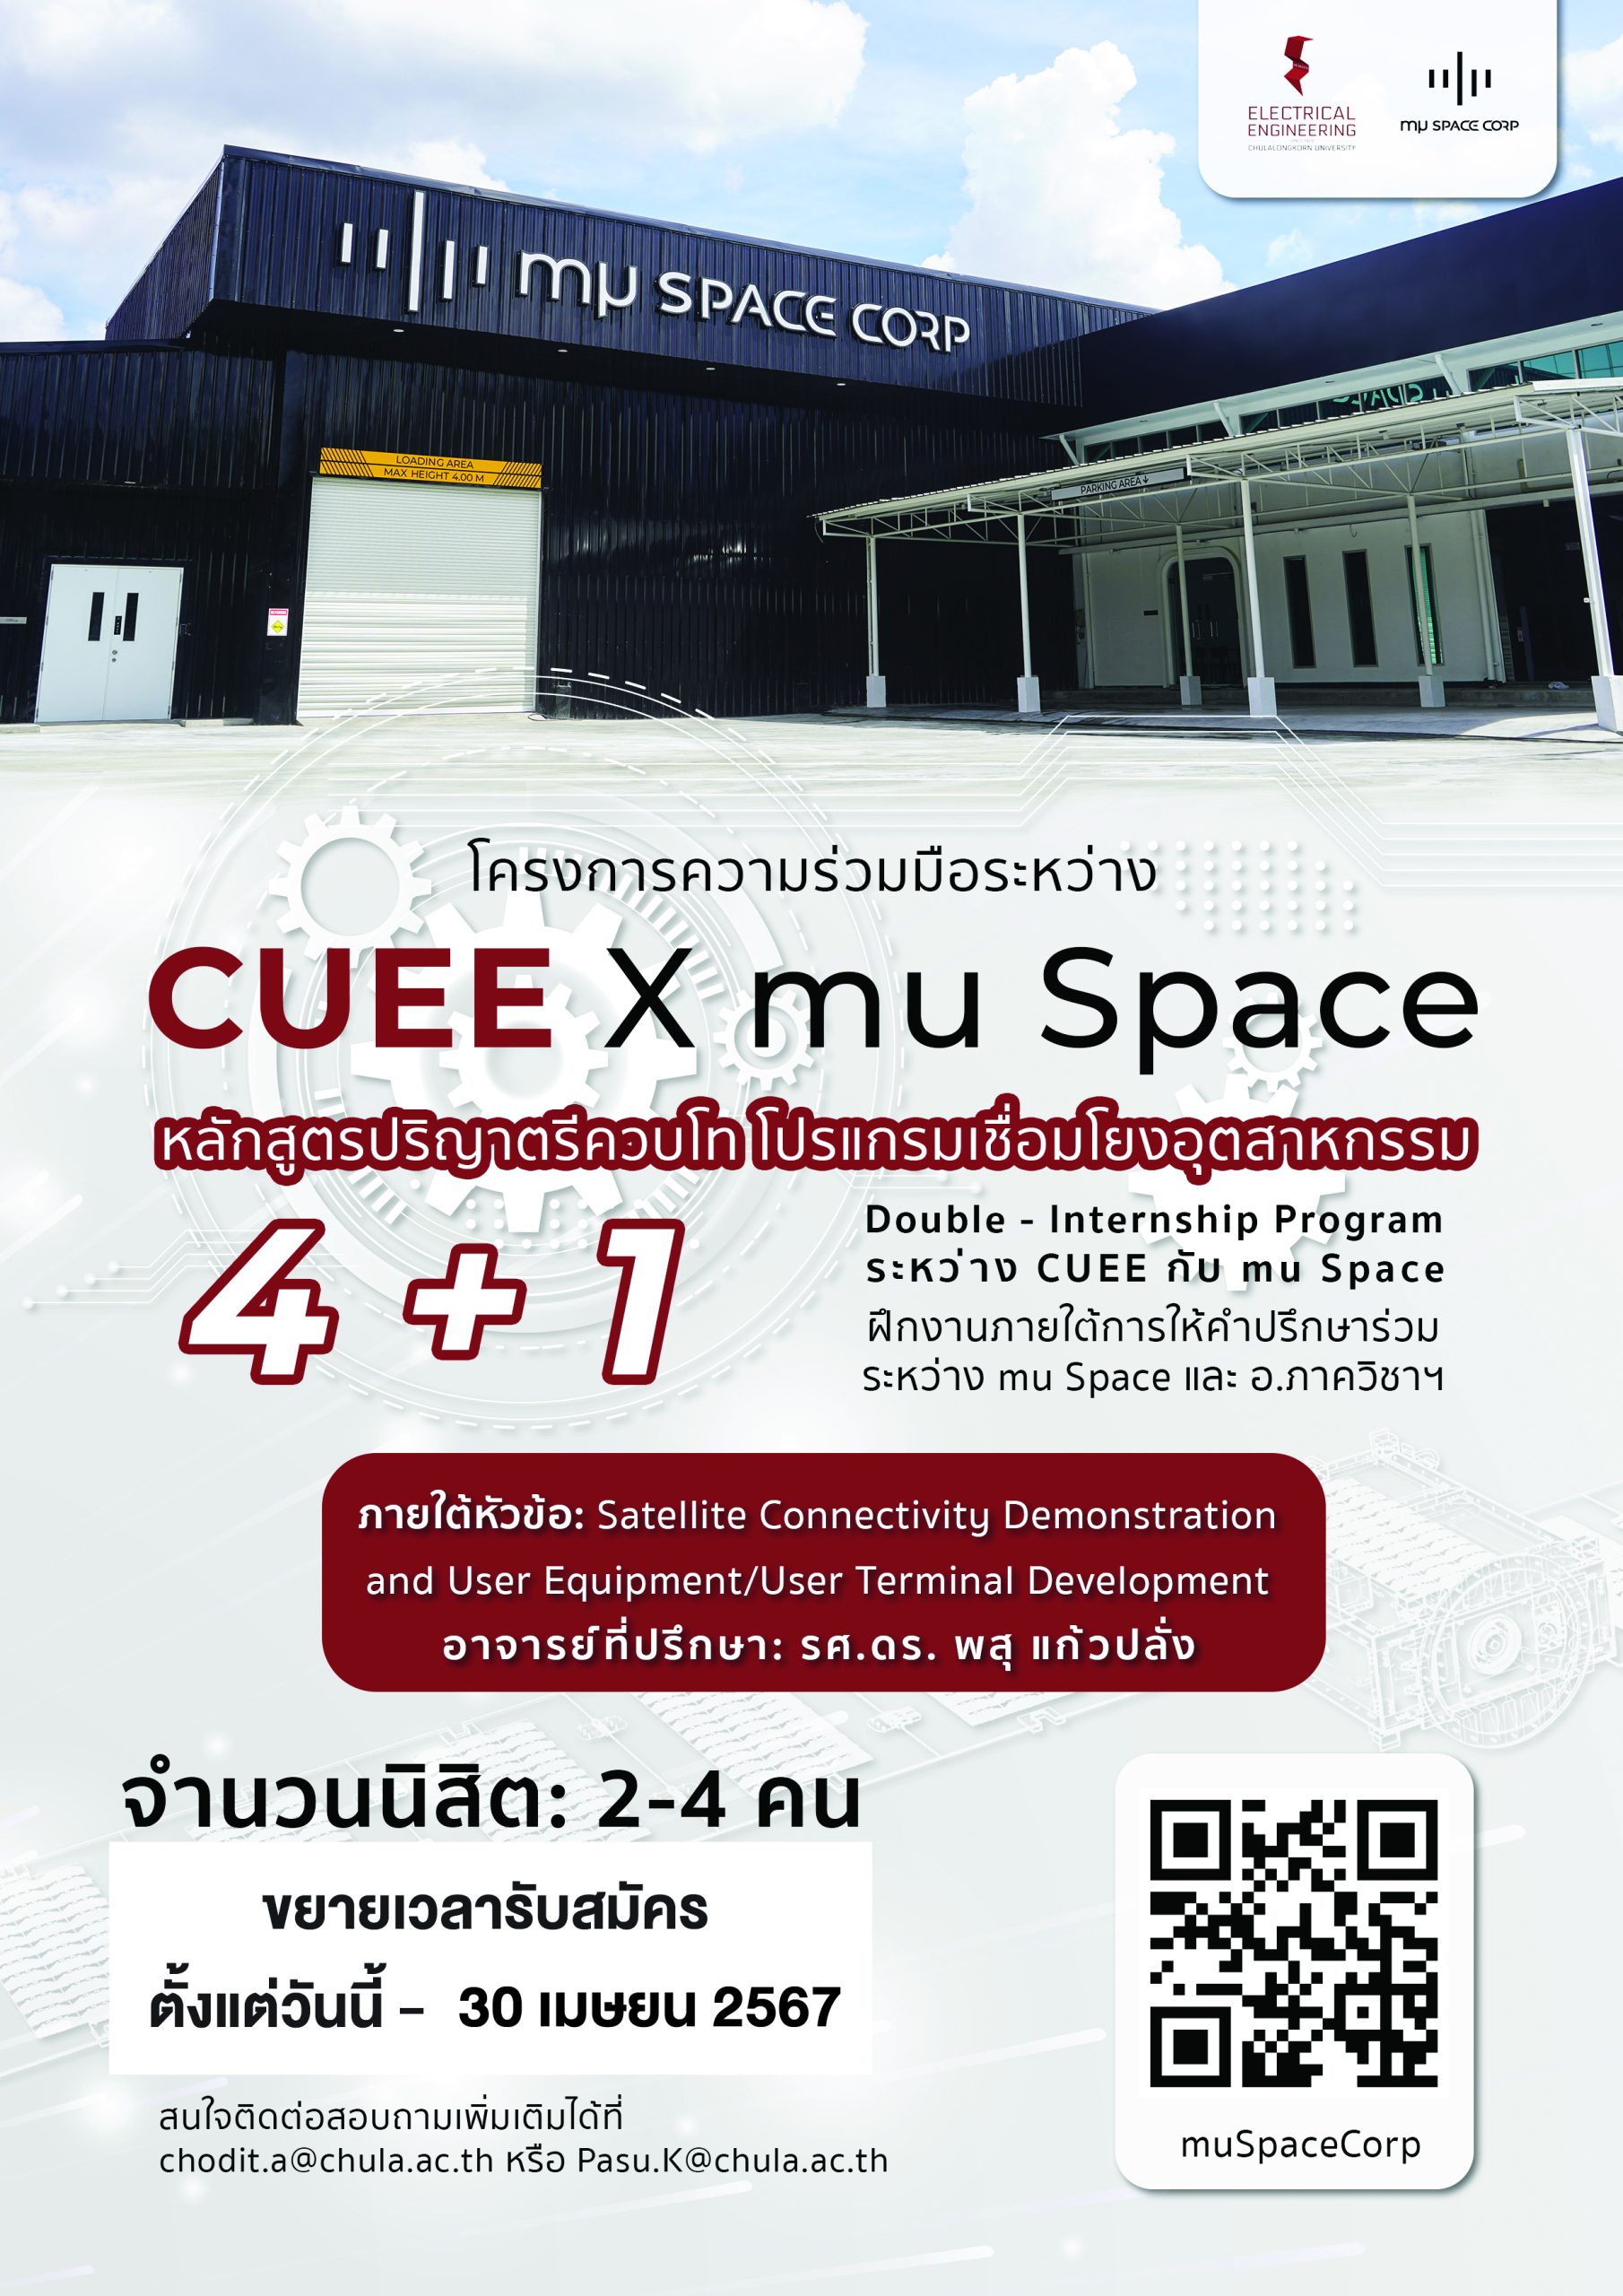 ขยายเวลารับสมัครหลักสูตรปริญญาตรีควบโท 4+1 โปรแกรมเชื่อมโยงอุตสาหกรรม CUEE x mu Space สมัครตั้งแต่วันนี้ - 30 เมษายน 2567